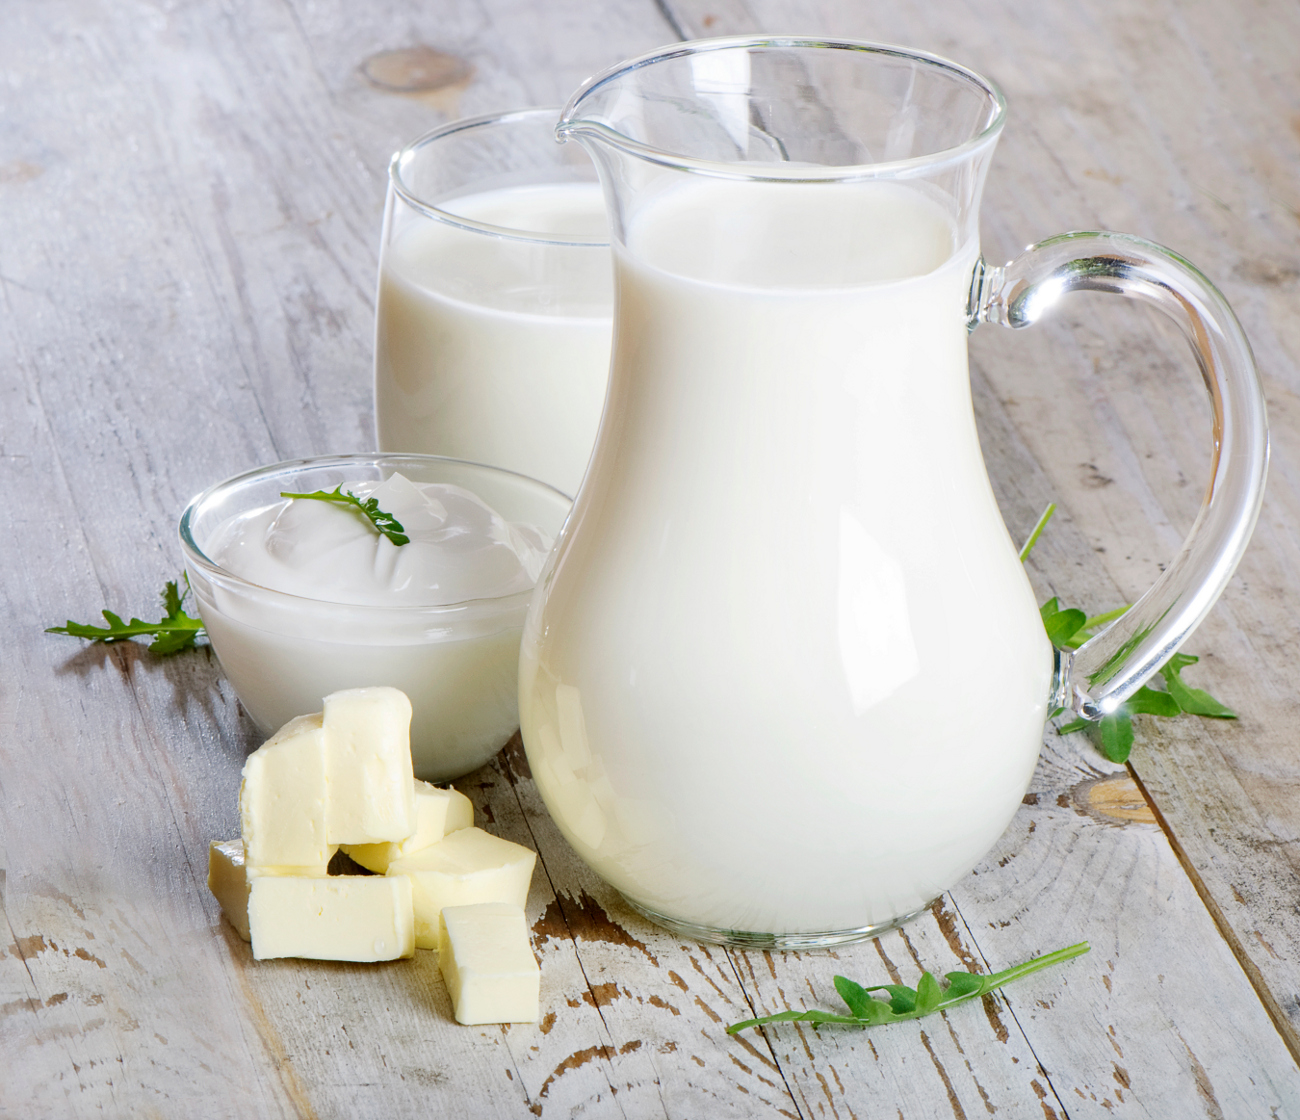   Có khoảng 90% dân số không dung nạp lactose từ sữa và các sản phẩm từ sữa  